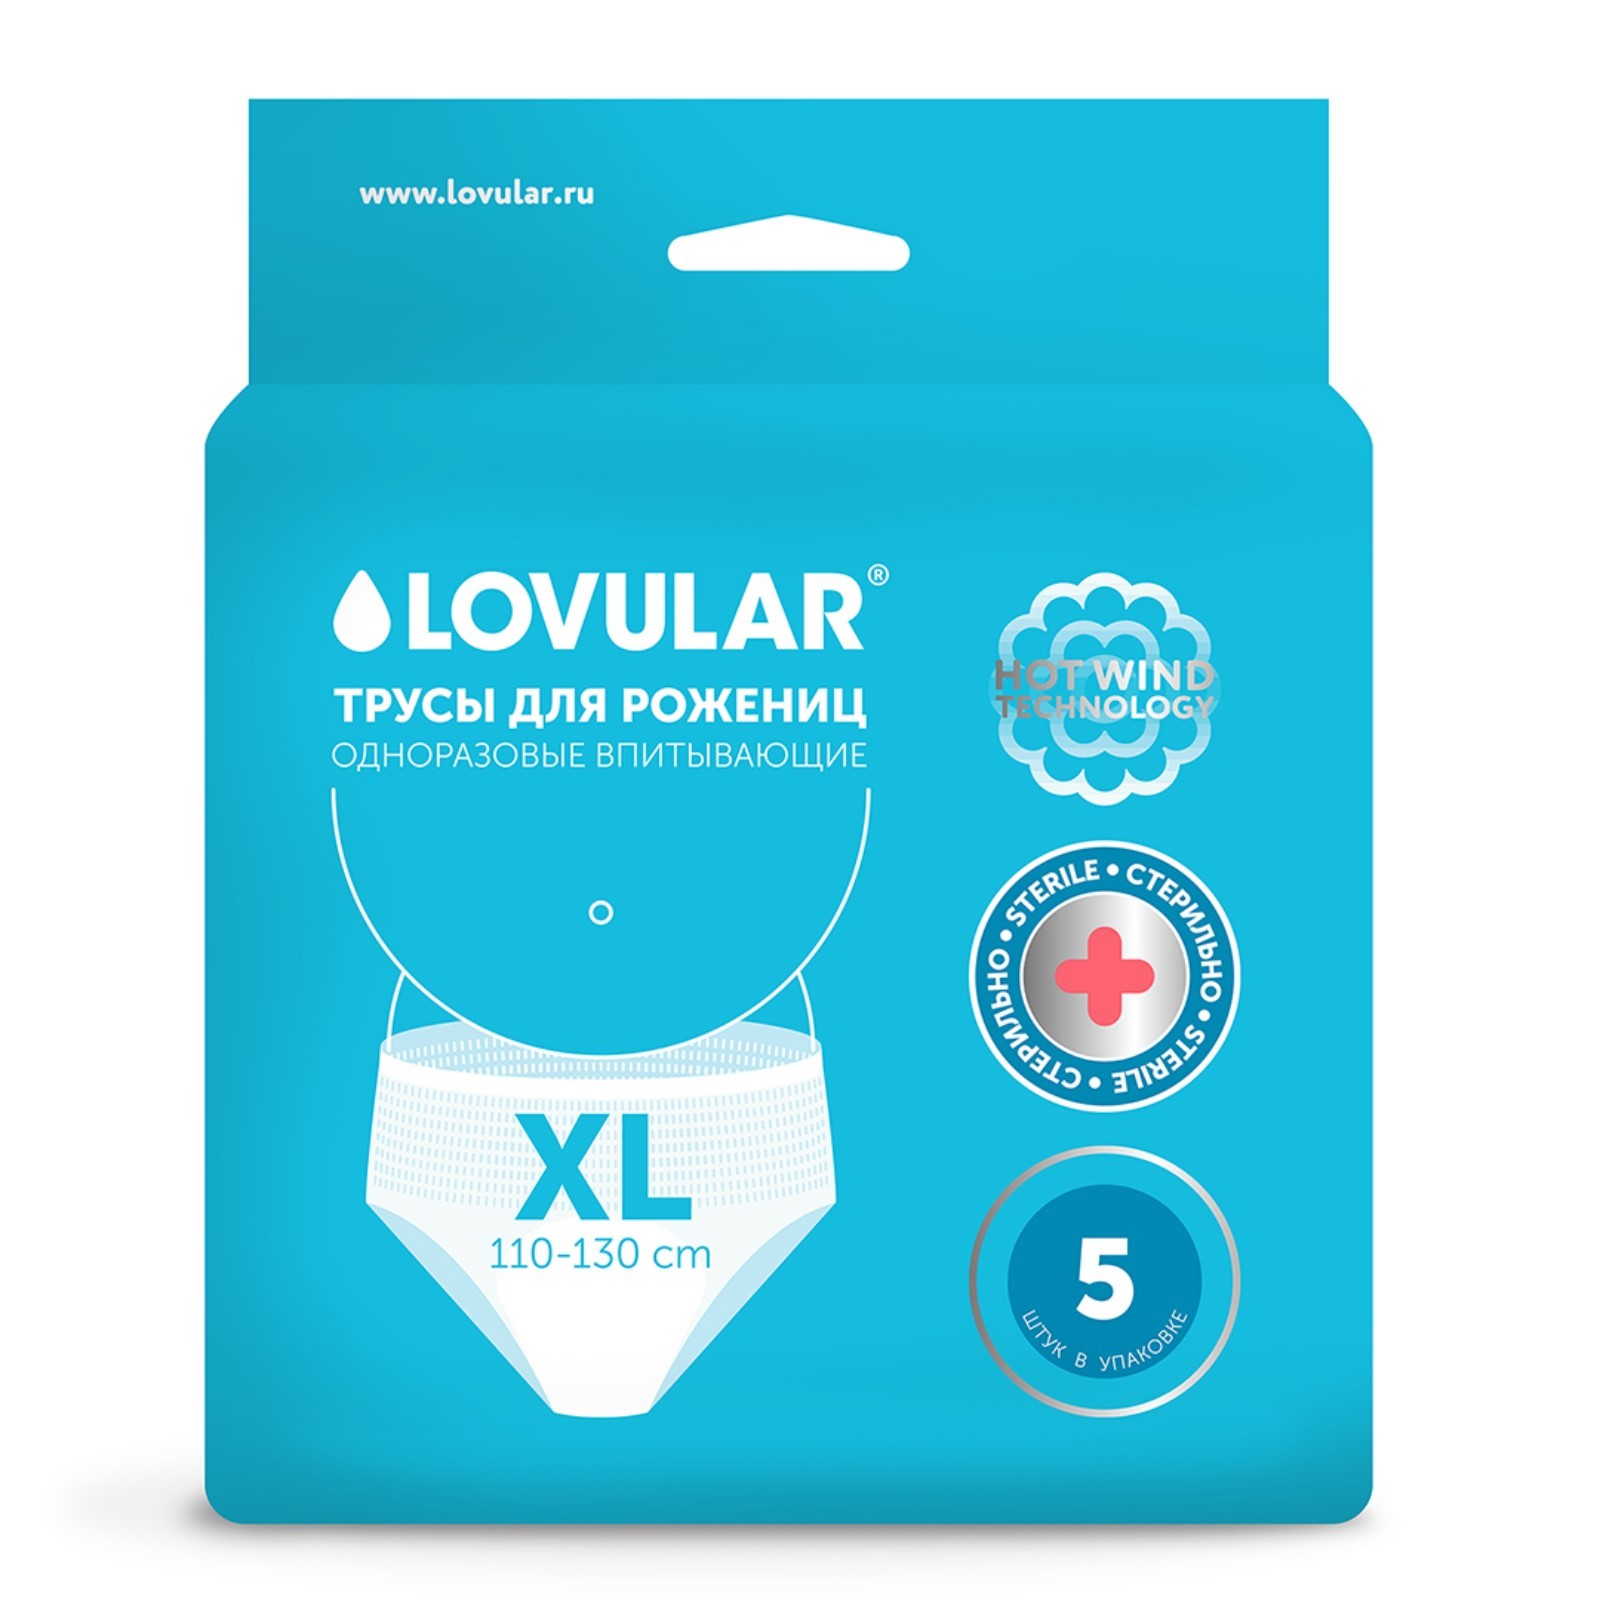 Трусы LOVULAR для рожениц, стерильные, одноразовые, р-р XL, 5 шт